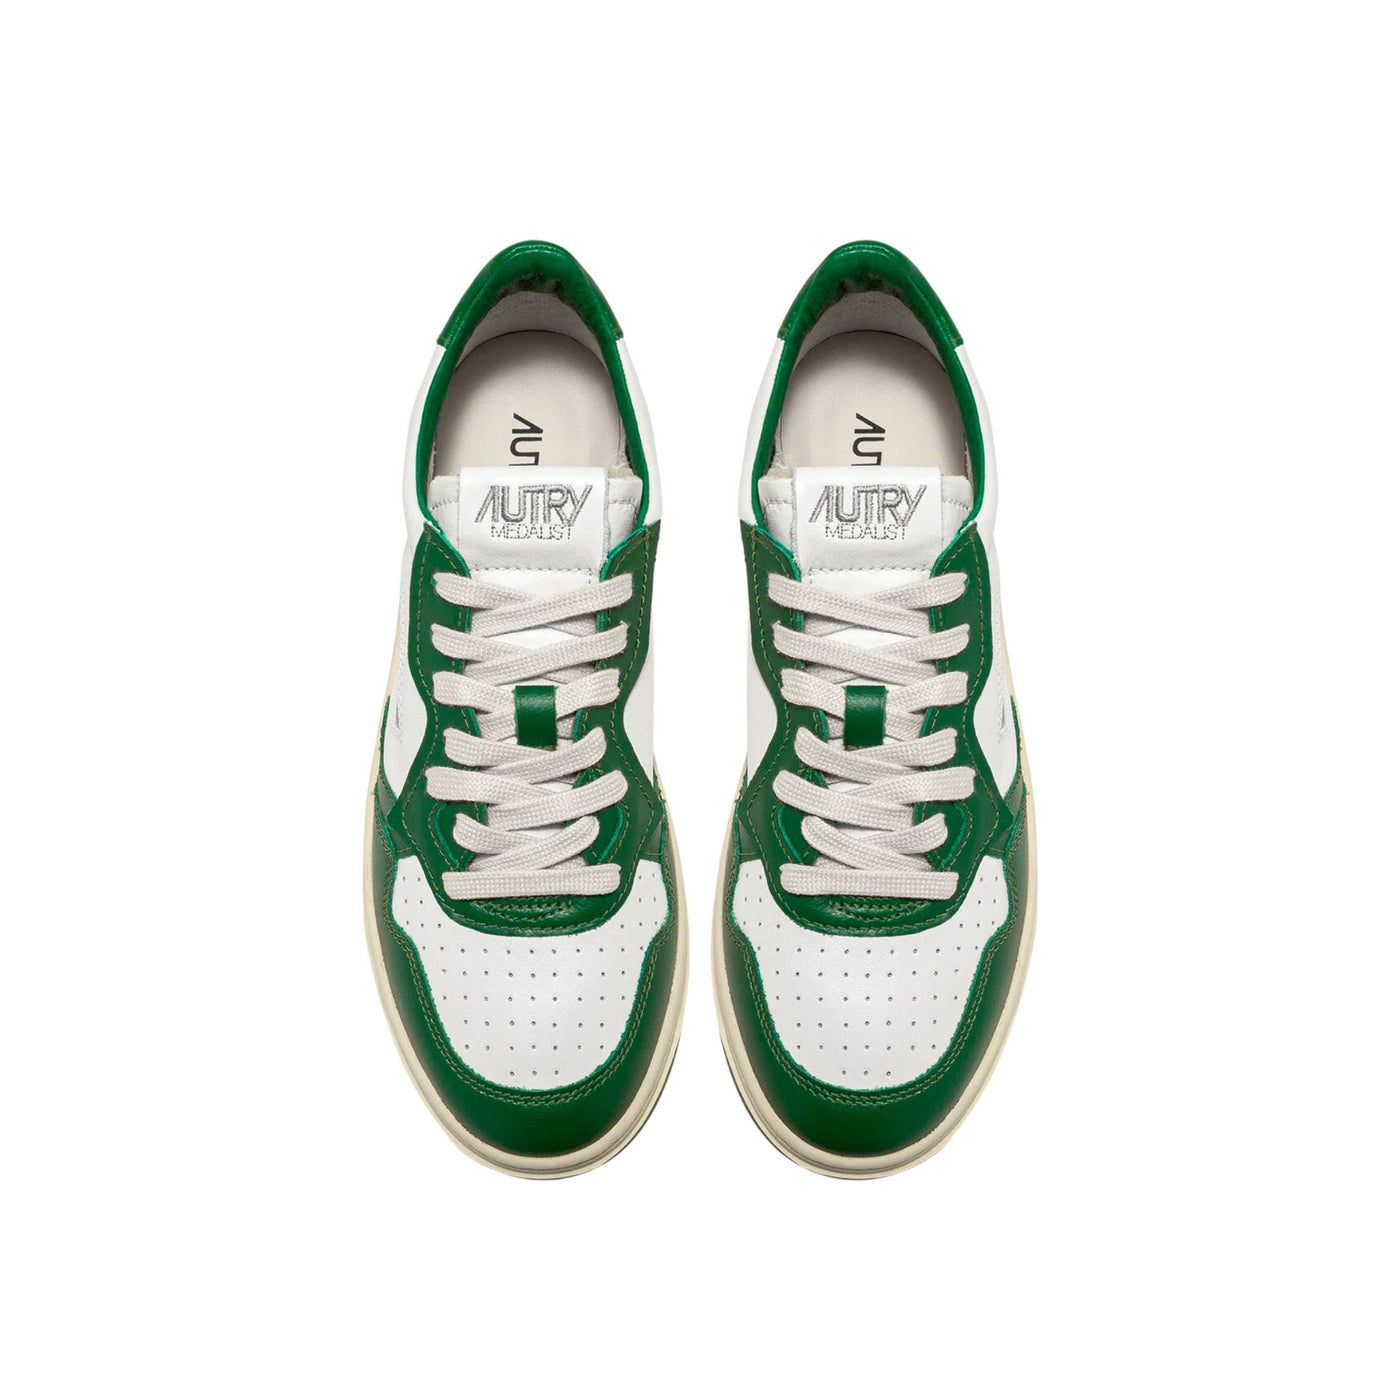 Medalist men's sneakers green white